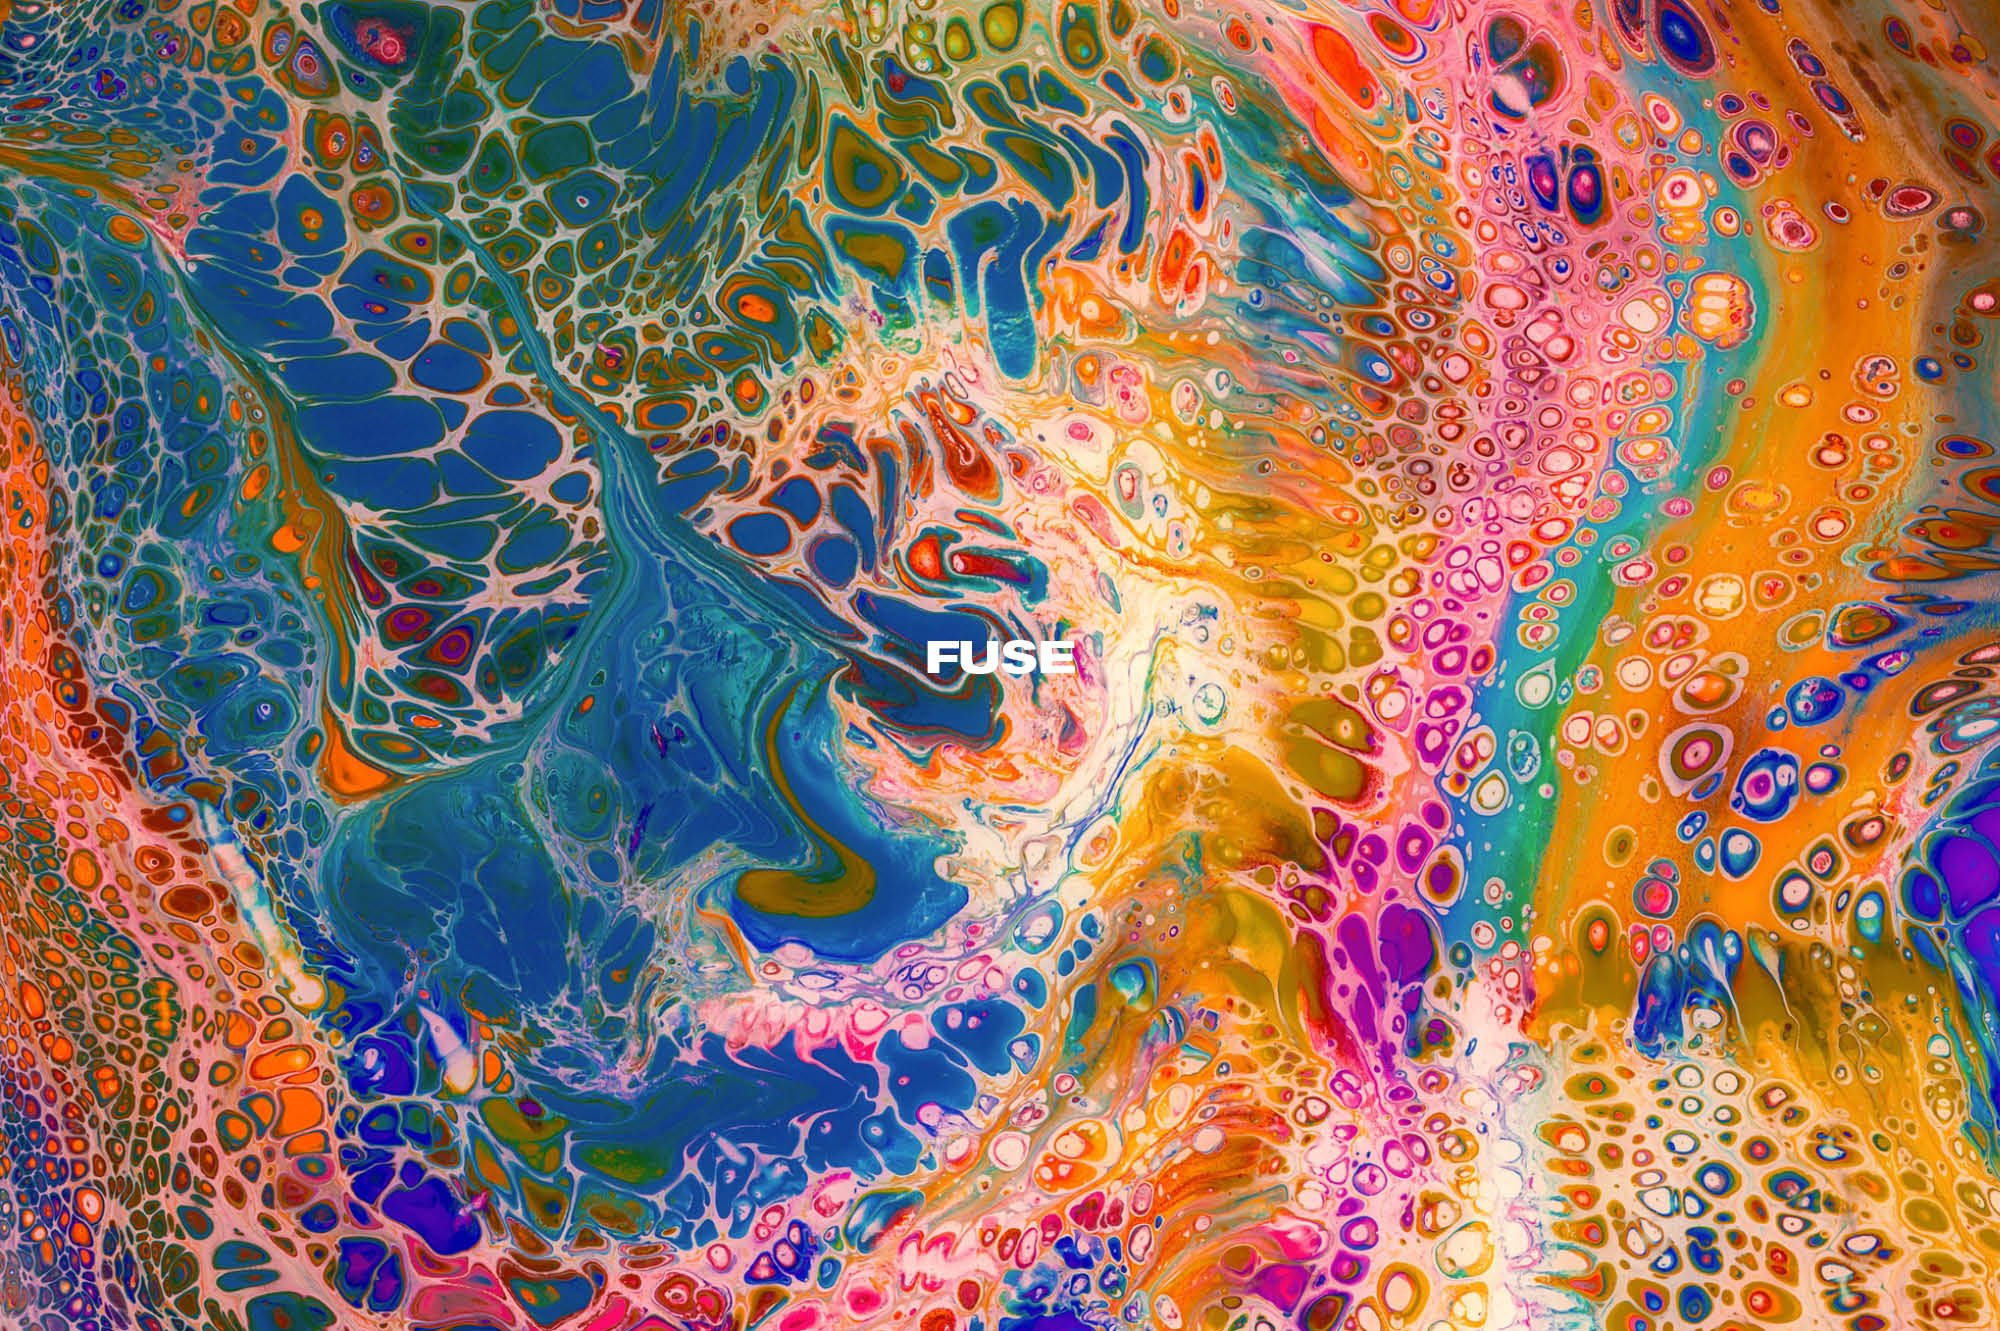 860 抽象炫彩油漆丙烯酸颜料流体液化创意底纹纹理背景图片素材 Chroma Supply – Fuse Abstract Paint Textures